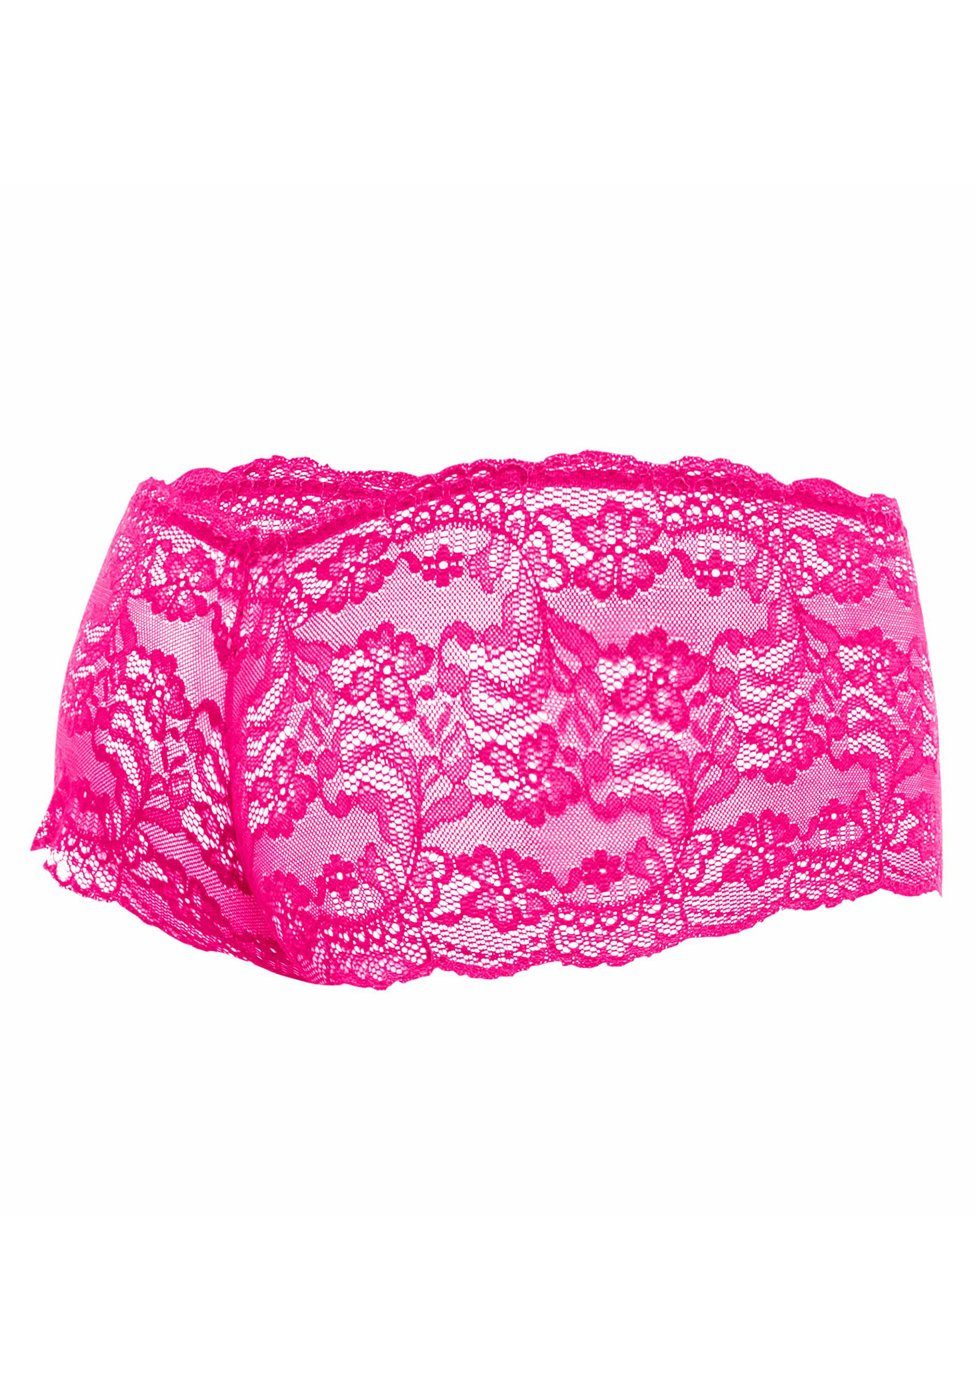 MOB Eroticwear Boxershorts Boxershorts pink aus - Spitze